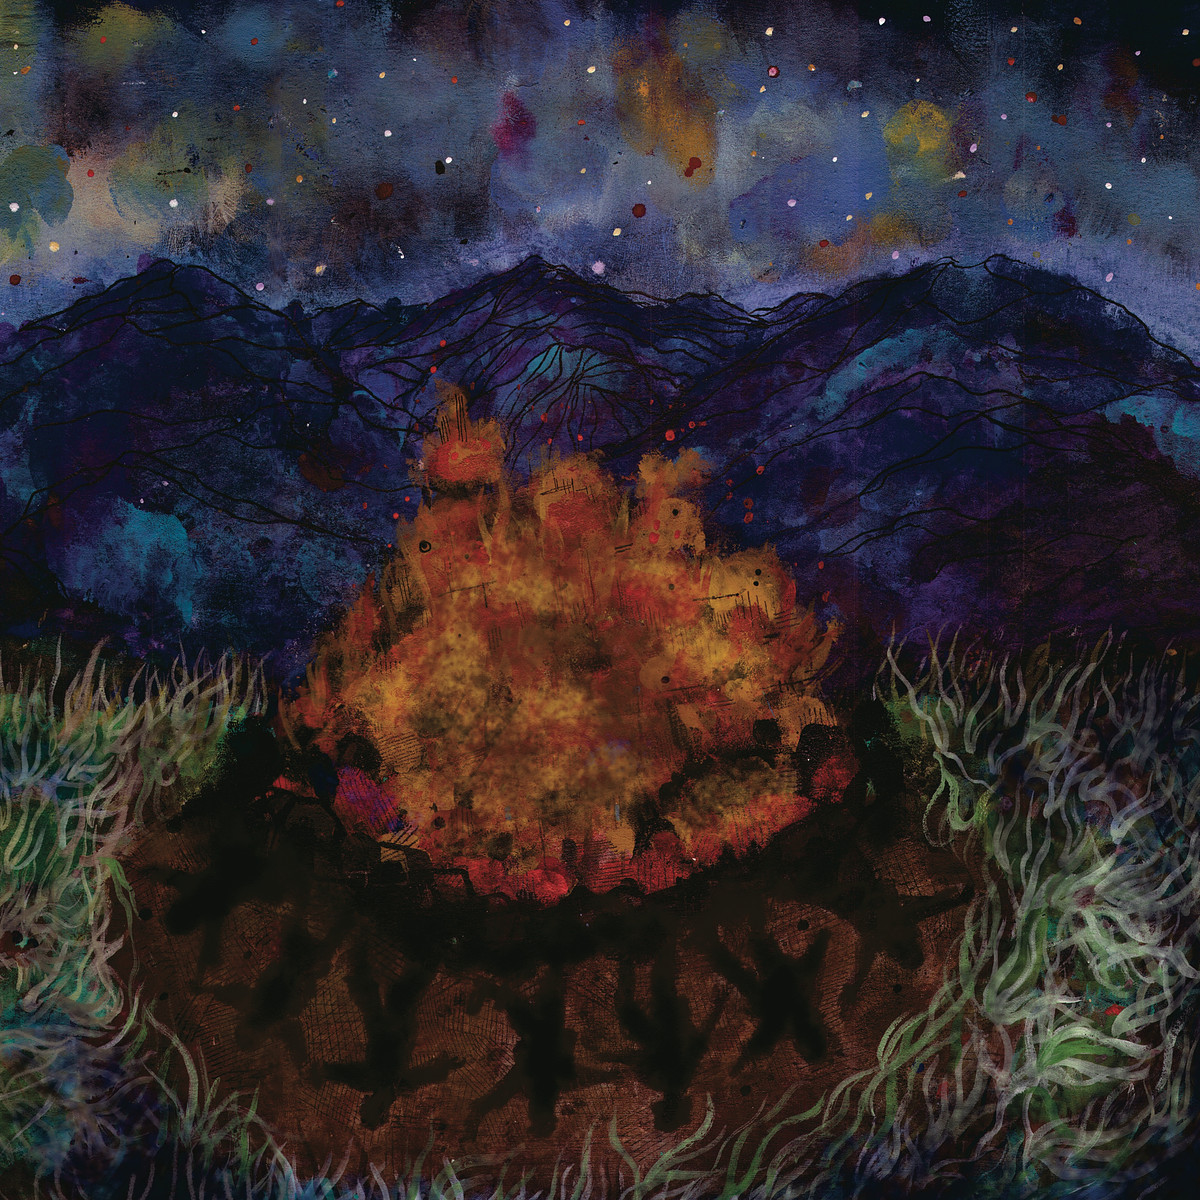 Infant Island ‘Obsidian Wreath’ album artwork